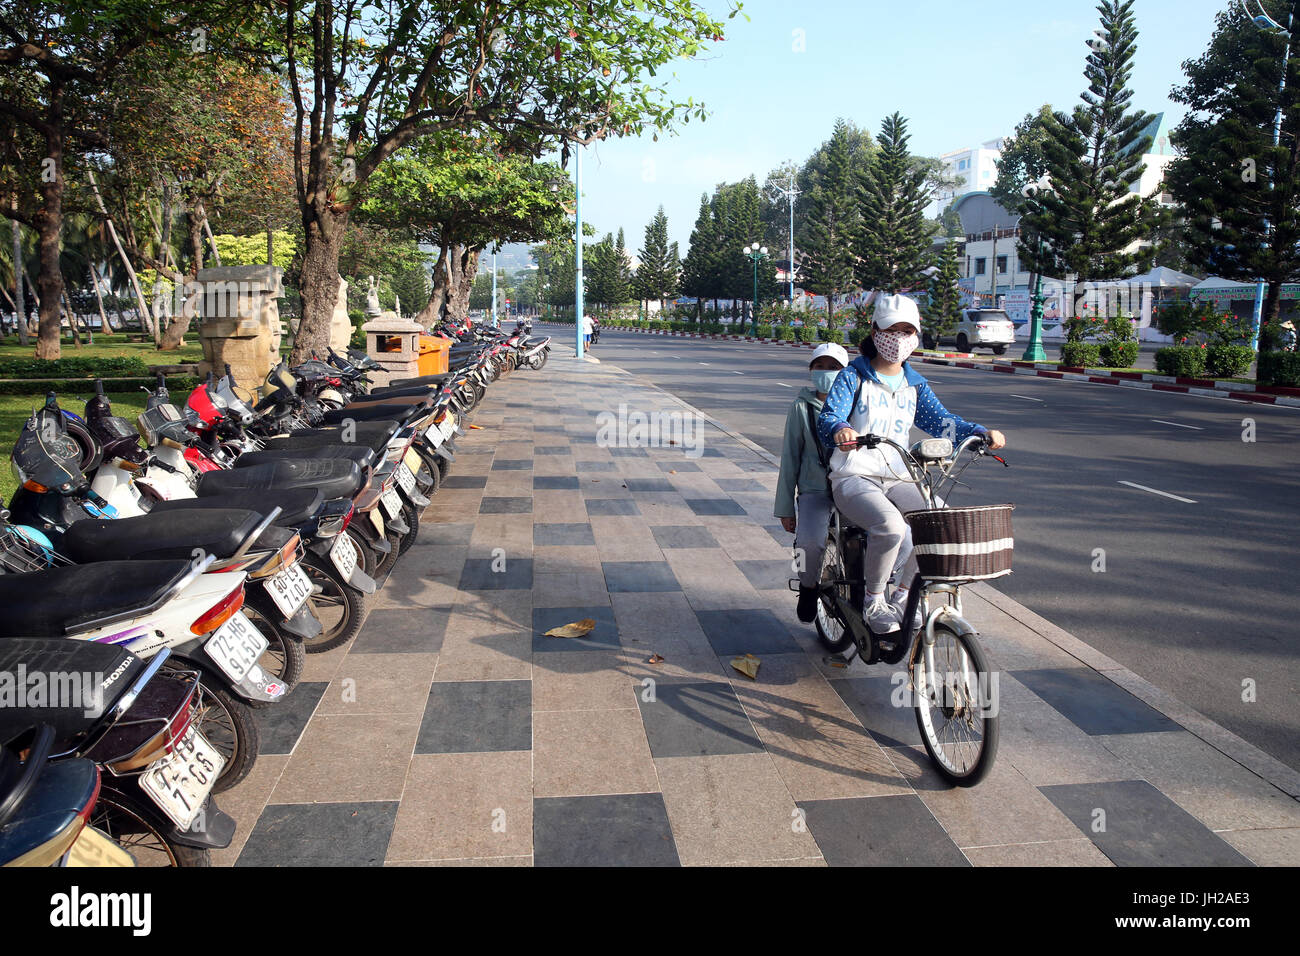 Location de vélos sur rue. Le Vietnam. Banque D'Images